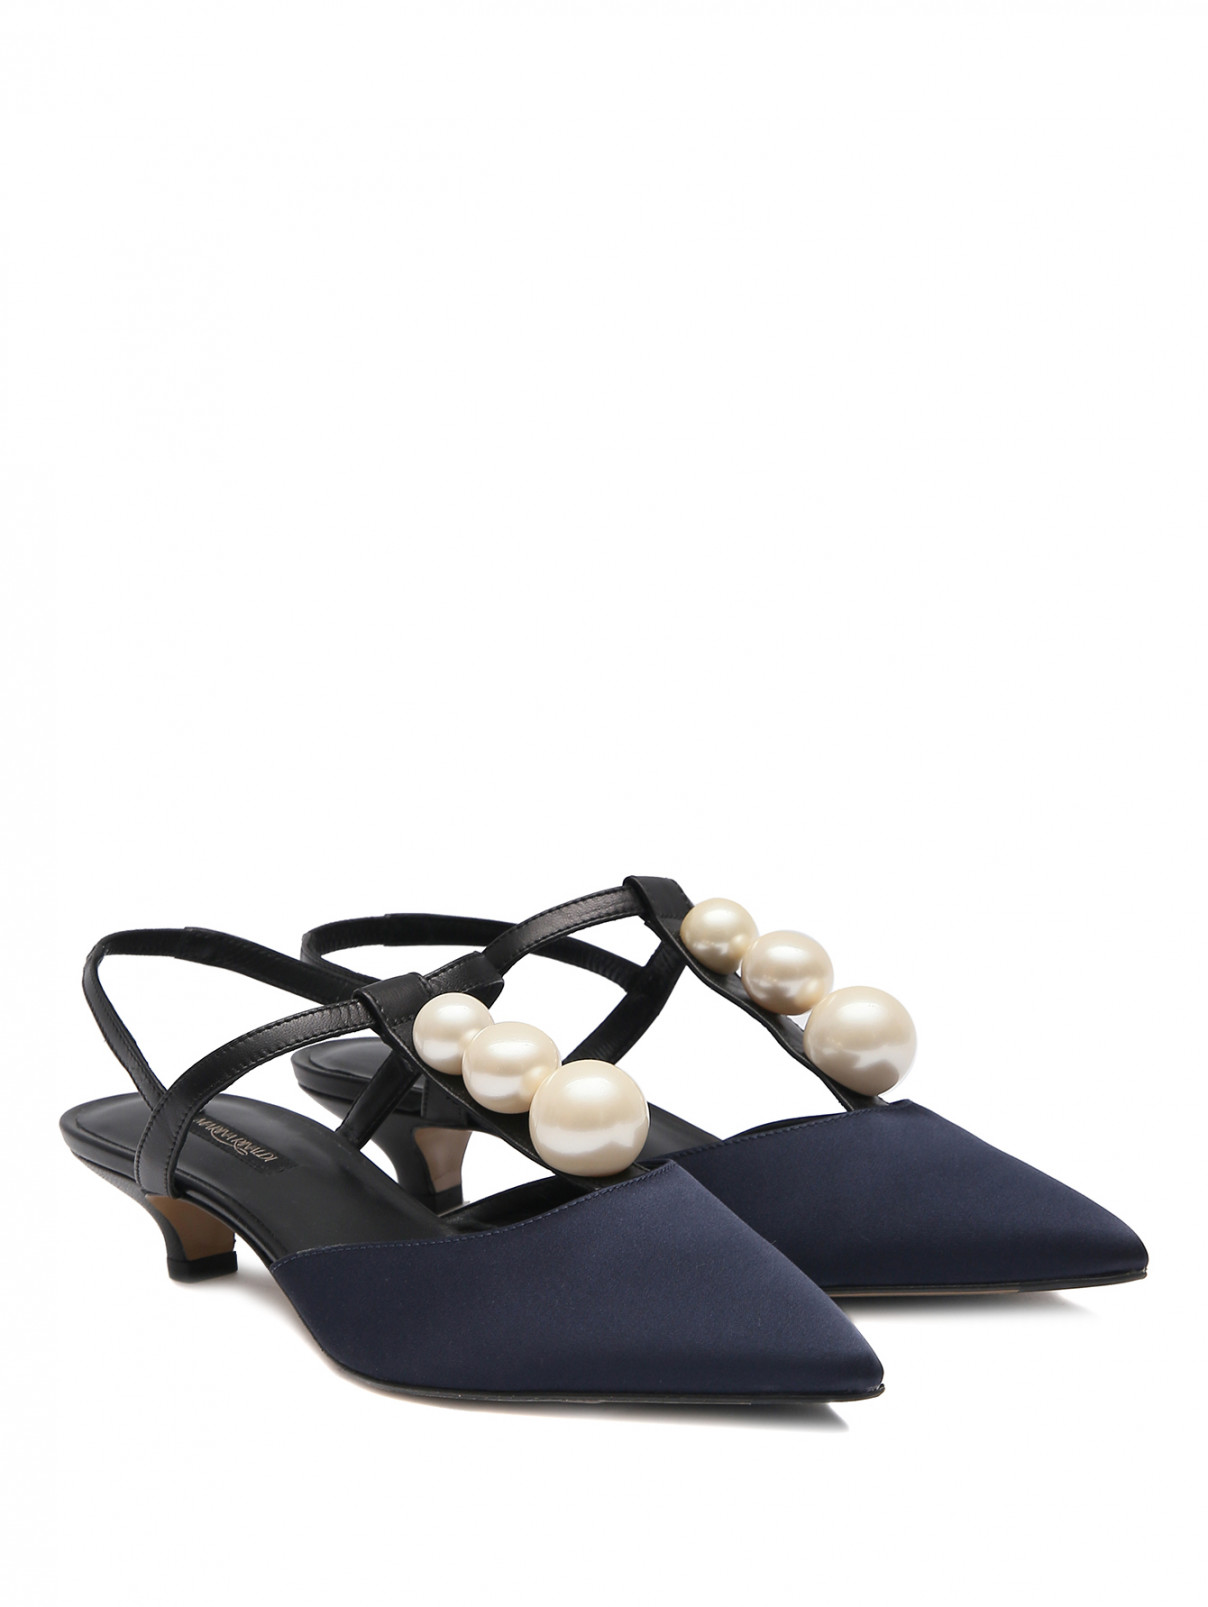 Туфли из шелковой ткани с жемчугом Marina Rinaldi  –  Общий вид  – Цвет:  Черный